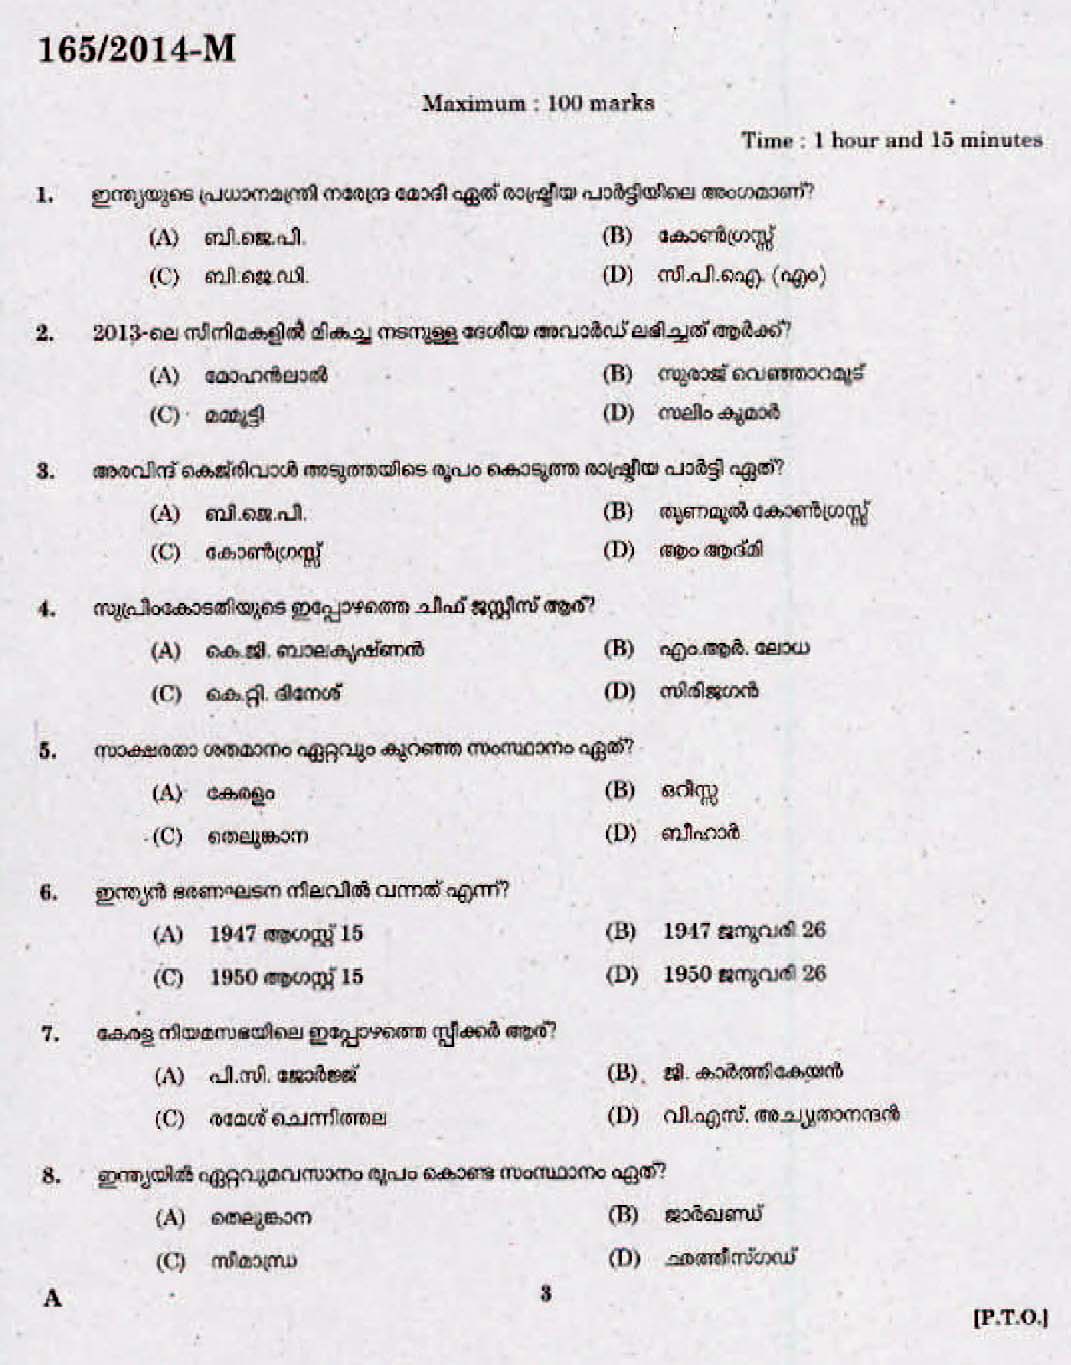 Kerala Last Grade Servants Exam 2014 Question Paper Code 1652014 M 1